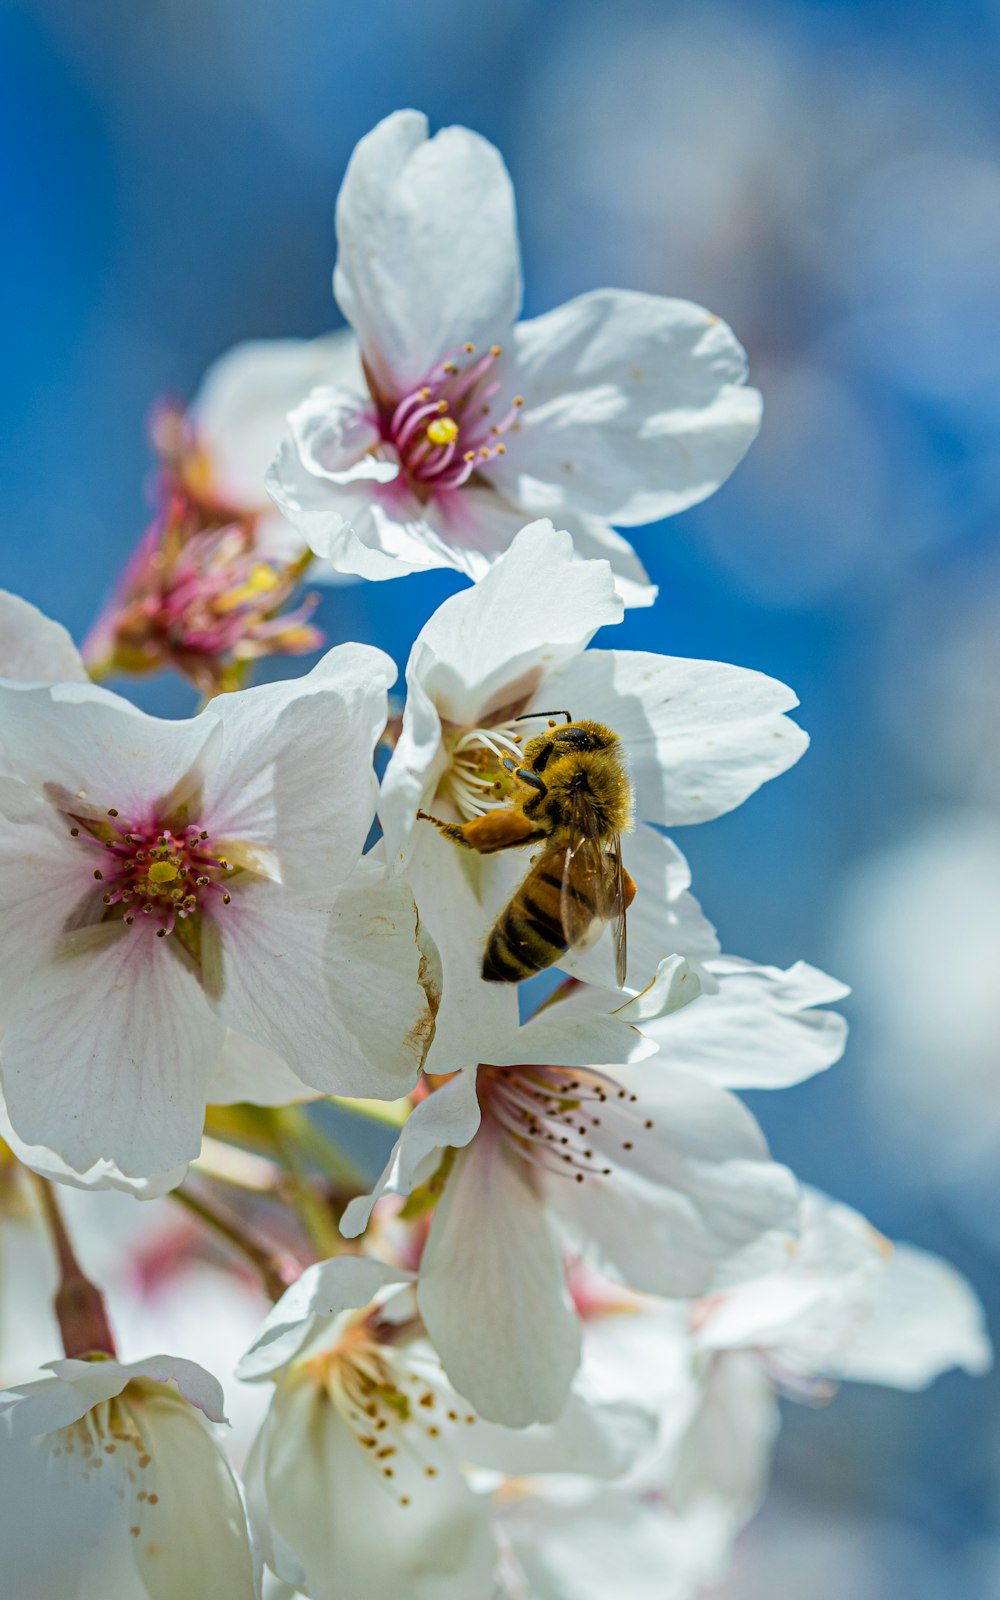 Honigbiene sitzt tagsüber auf weißer Kirschblüte in Nahaufnahmen